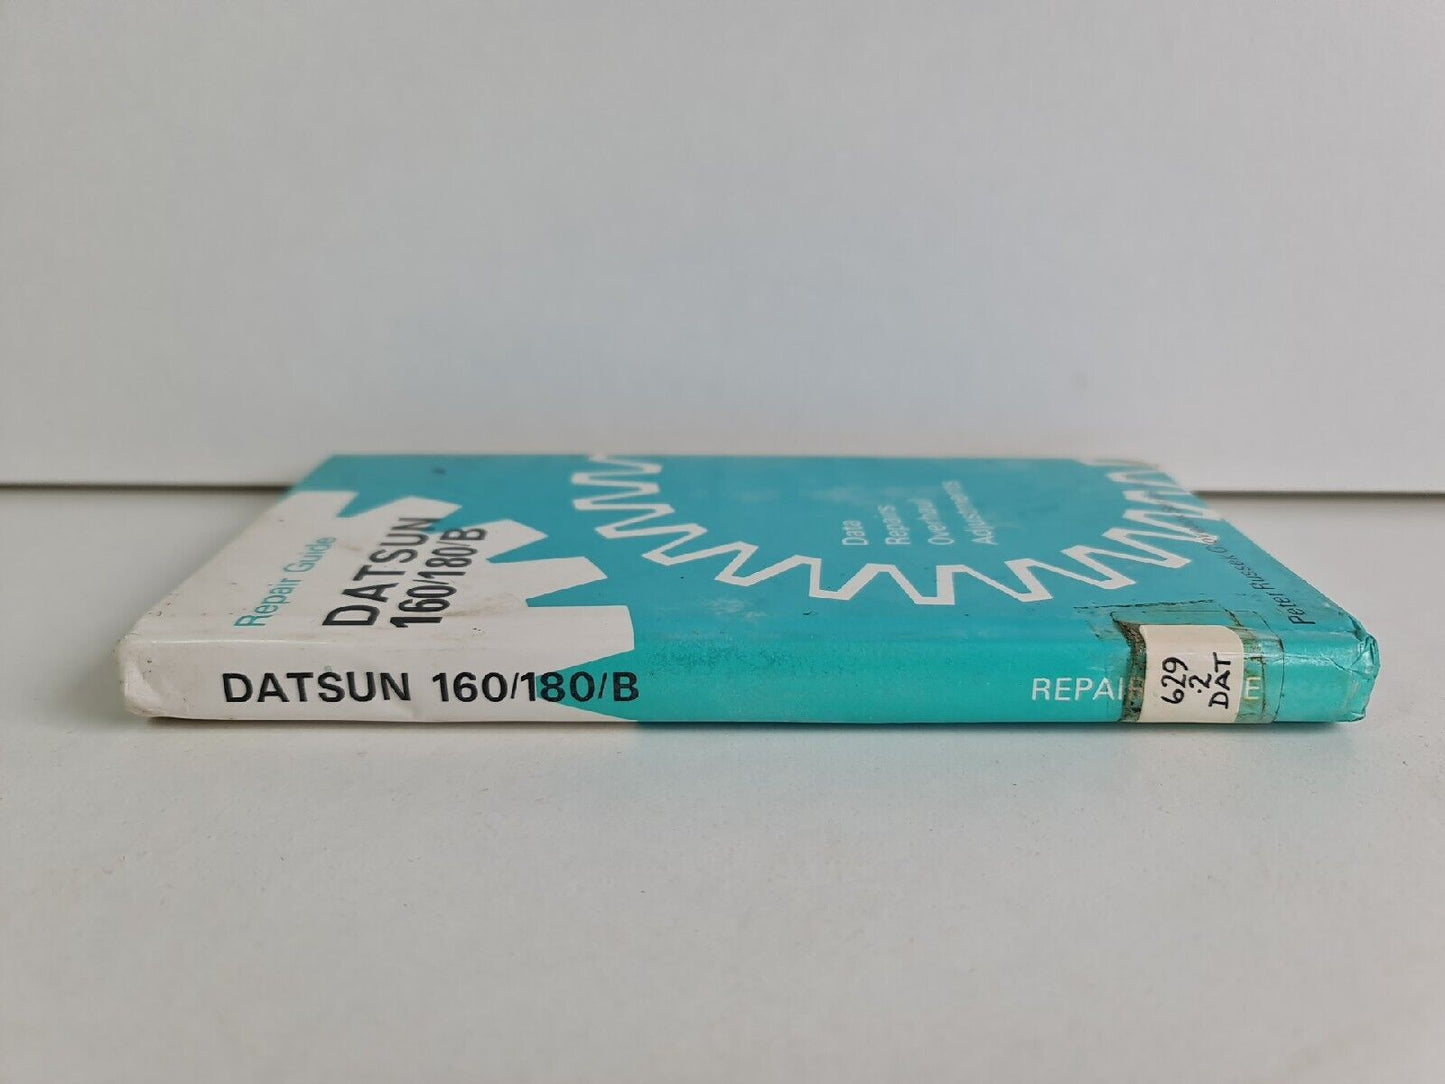 Repair Guide for Datsun Bluebird 160/180B by Peter Russek